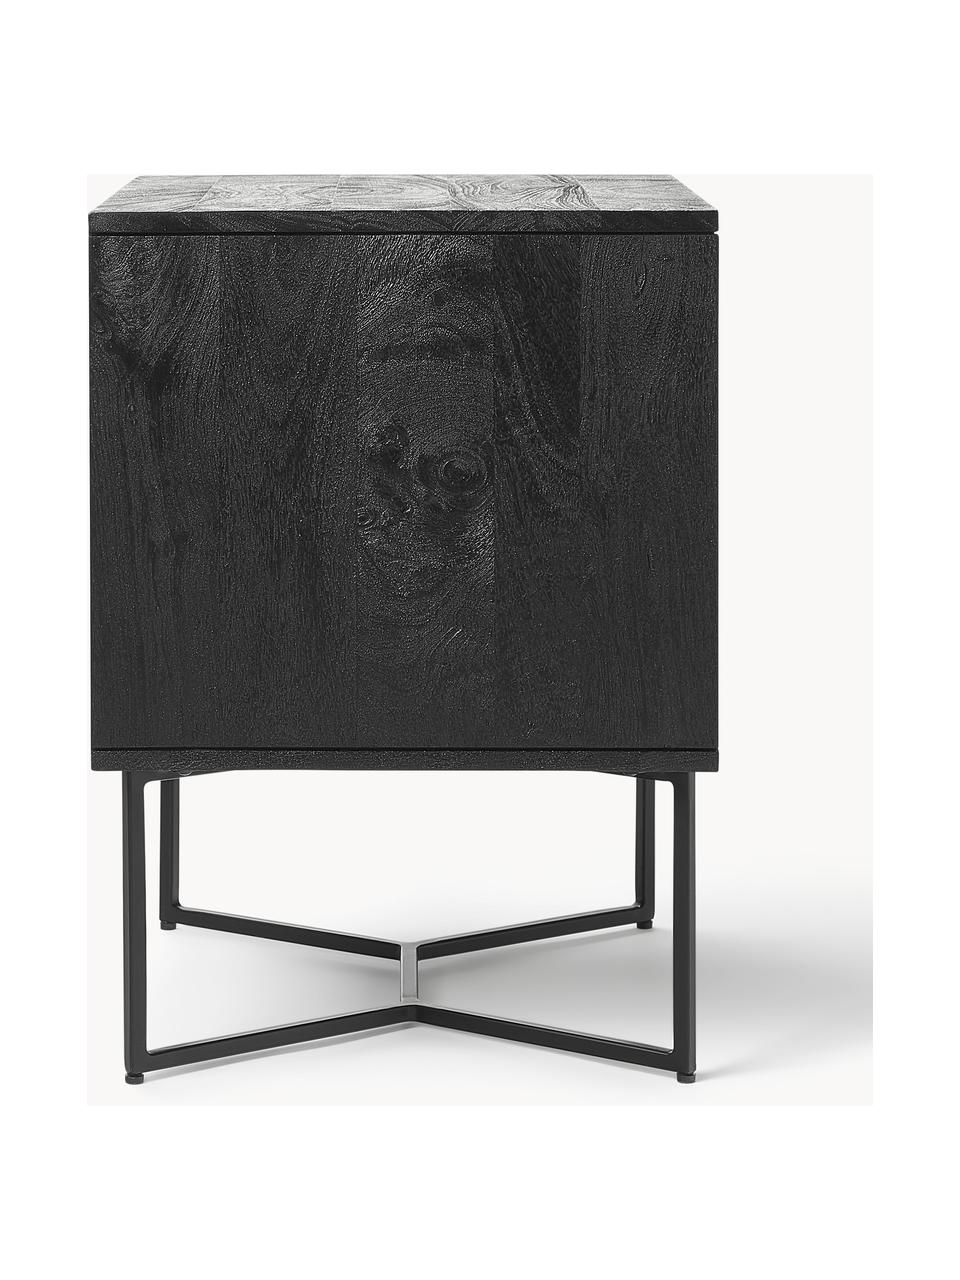 Noční stolek z masivního mangového dřeva se zásuvkami Luca, Mangové dřevo černě lakované, černá, Š 45 cm, V 57 cm